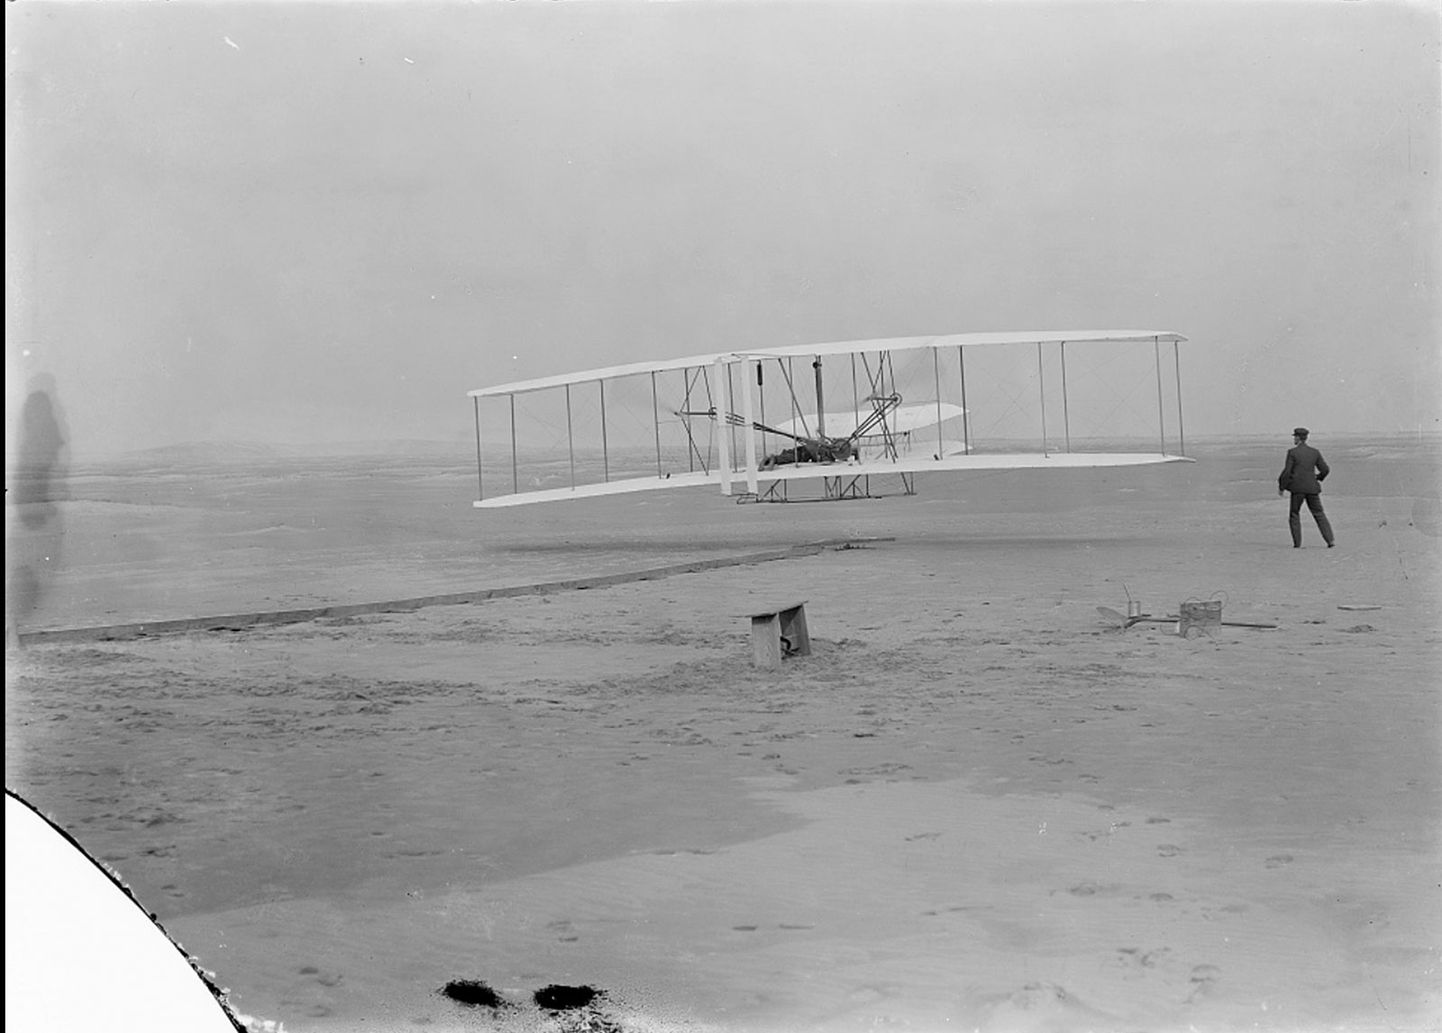 Orville Wright lendamas 17. detsembrl 1903 Põhja-Carolinas Kitty Hawki lähedal, tehes maailma esimese juhitava mootorlennu, olles õhus 12 sekundit ja läbides 36 meetrit. Lennuki juures on näha ka Wilbur Wrighti